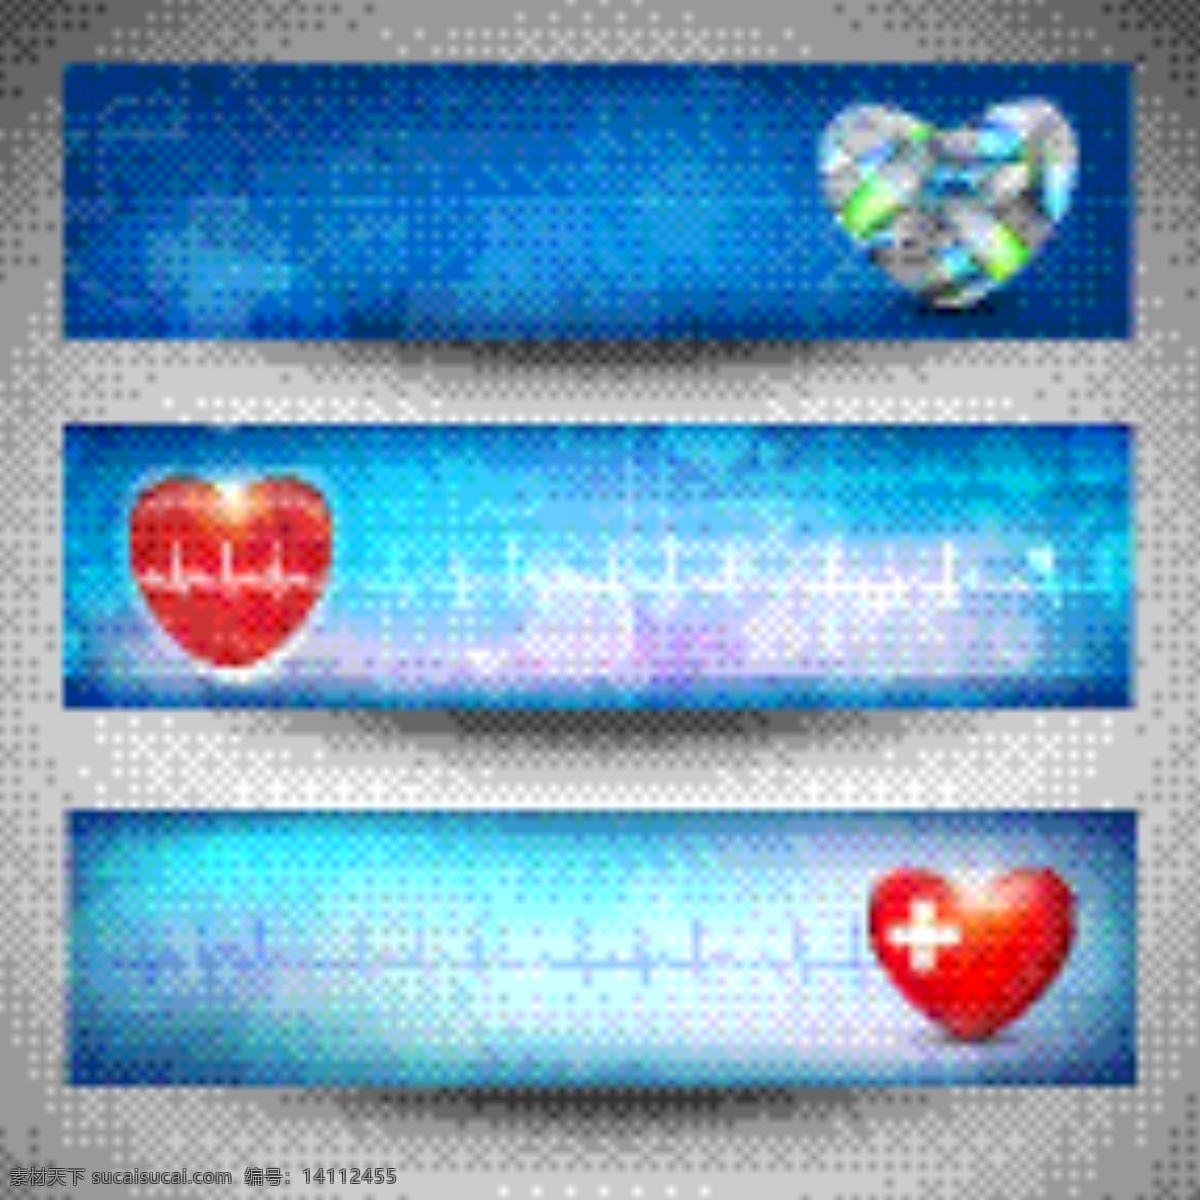 医疗横幅广告 网站的标题 横幅 医院 爱心 红心 电流波动 药丸 矢量素材 青色 天蓝色